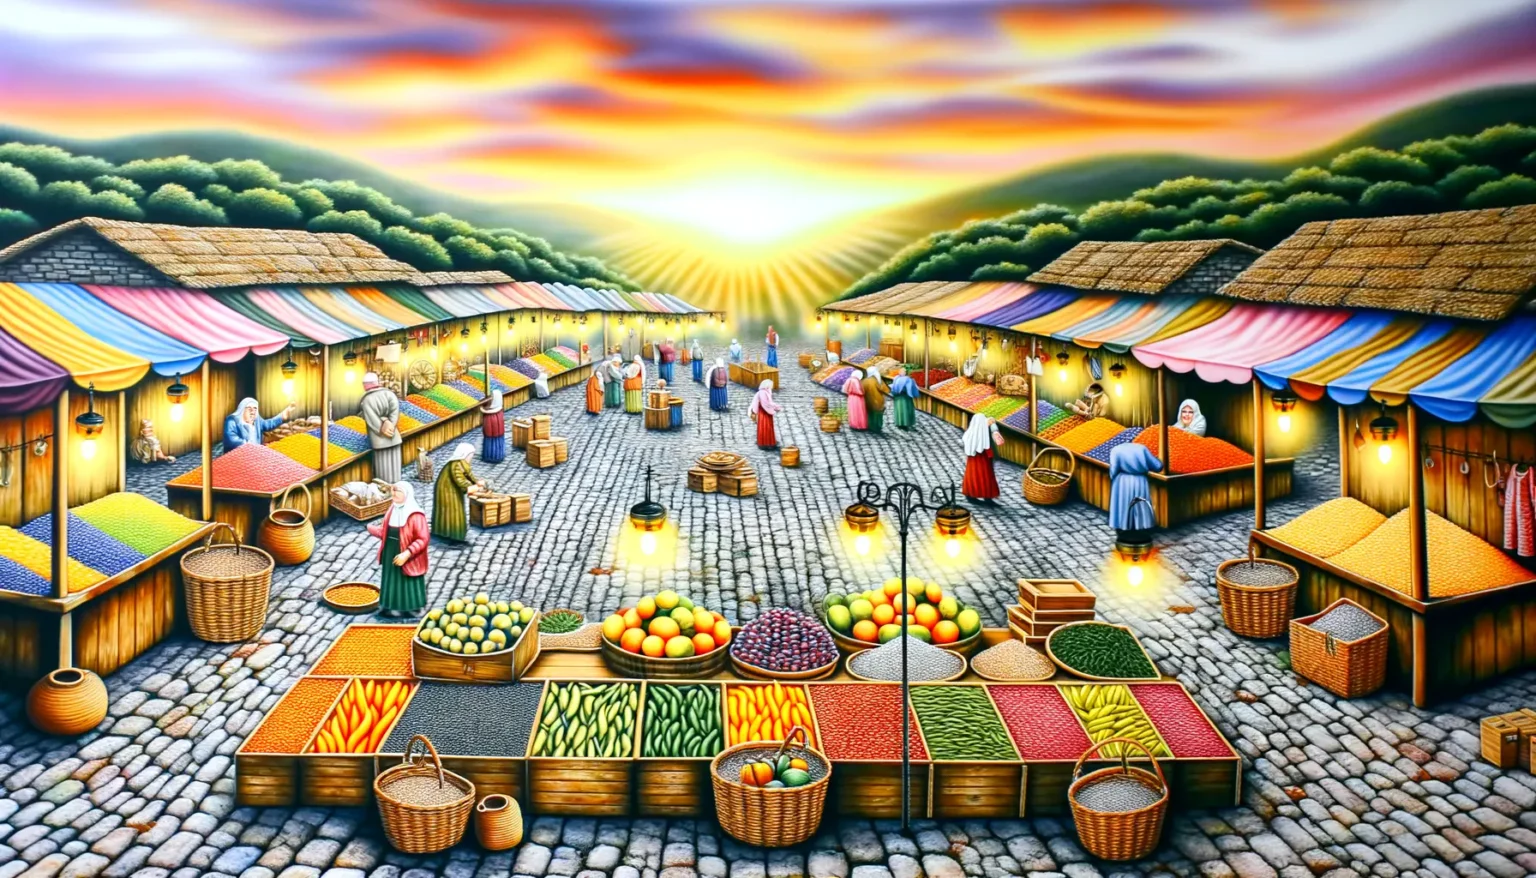 Eine lebendige und farbenfrohe Darstellung eines traditionellen Marktplatzes mit verschiedenen Marktständen, die eine Vielzahl von Früchten und Gewürzen verkaufen. Menschen in historischer Kleidung schlendern zwischen den Ständen umher. Der Himmel ist dramatisch mit einem leuchtenden Sonnenuntergang gemalt, der das gesamte Szenario in warmes Licht taucht.